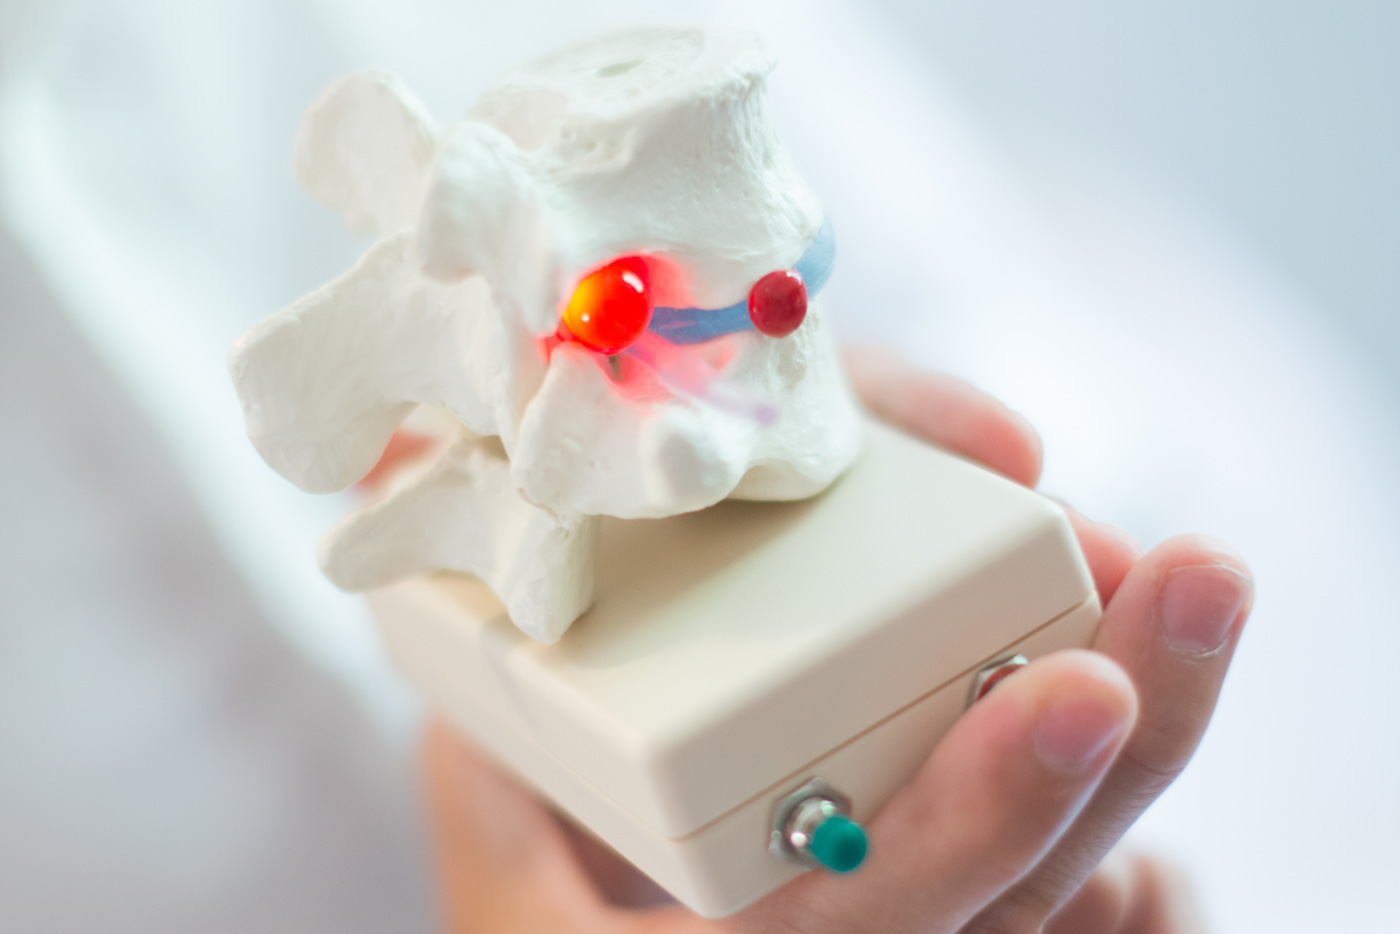 Subluxación vertebral: la base de la quiropráctica y del trabajo del quiropráctico